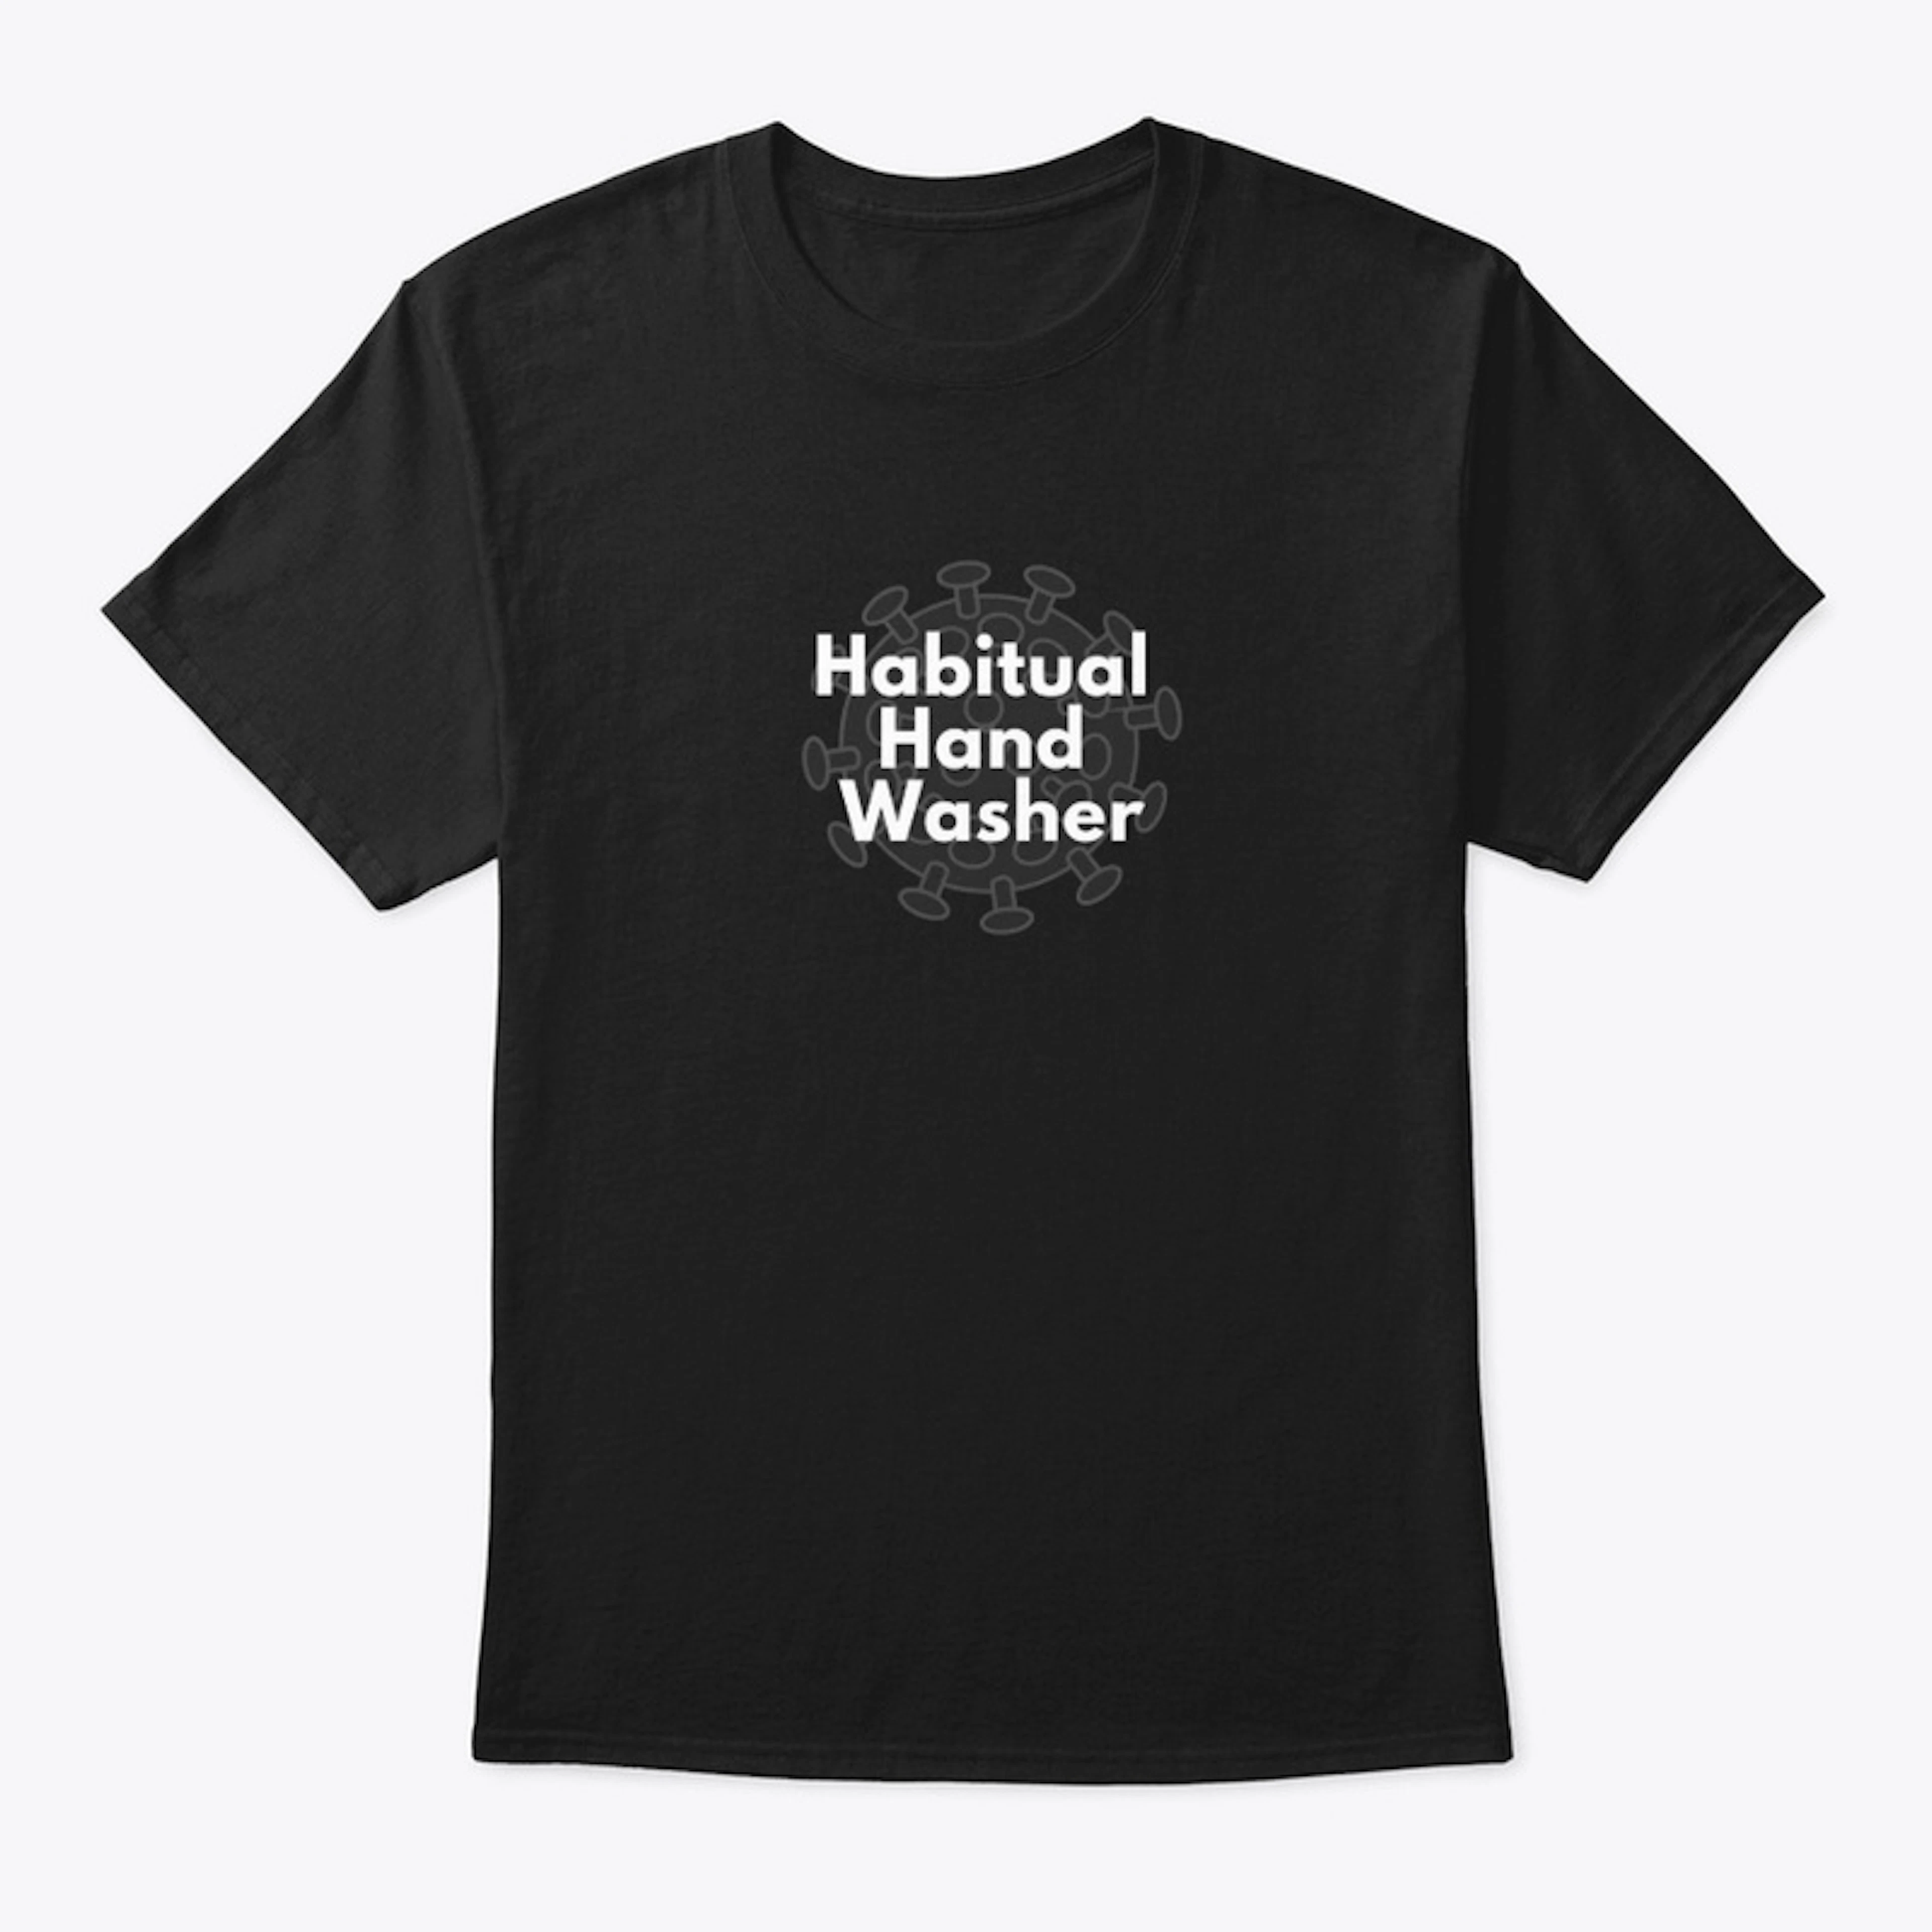 Habitual Hand Washer - dark